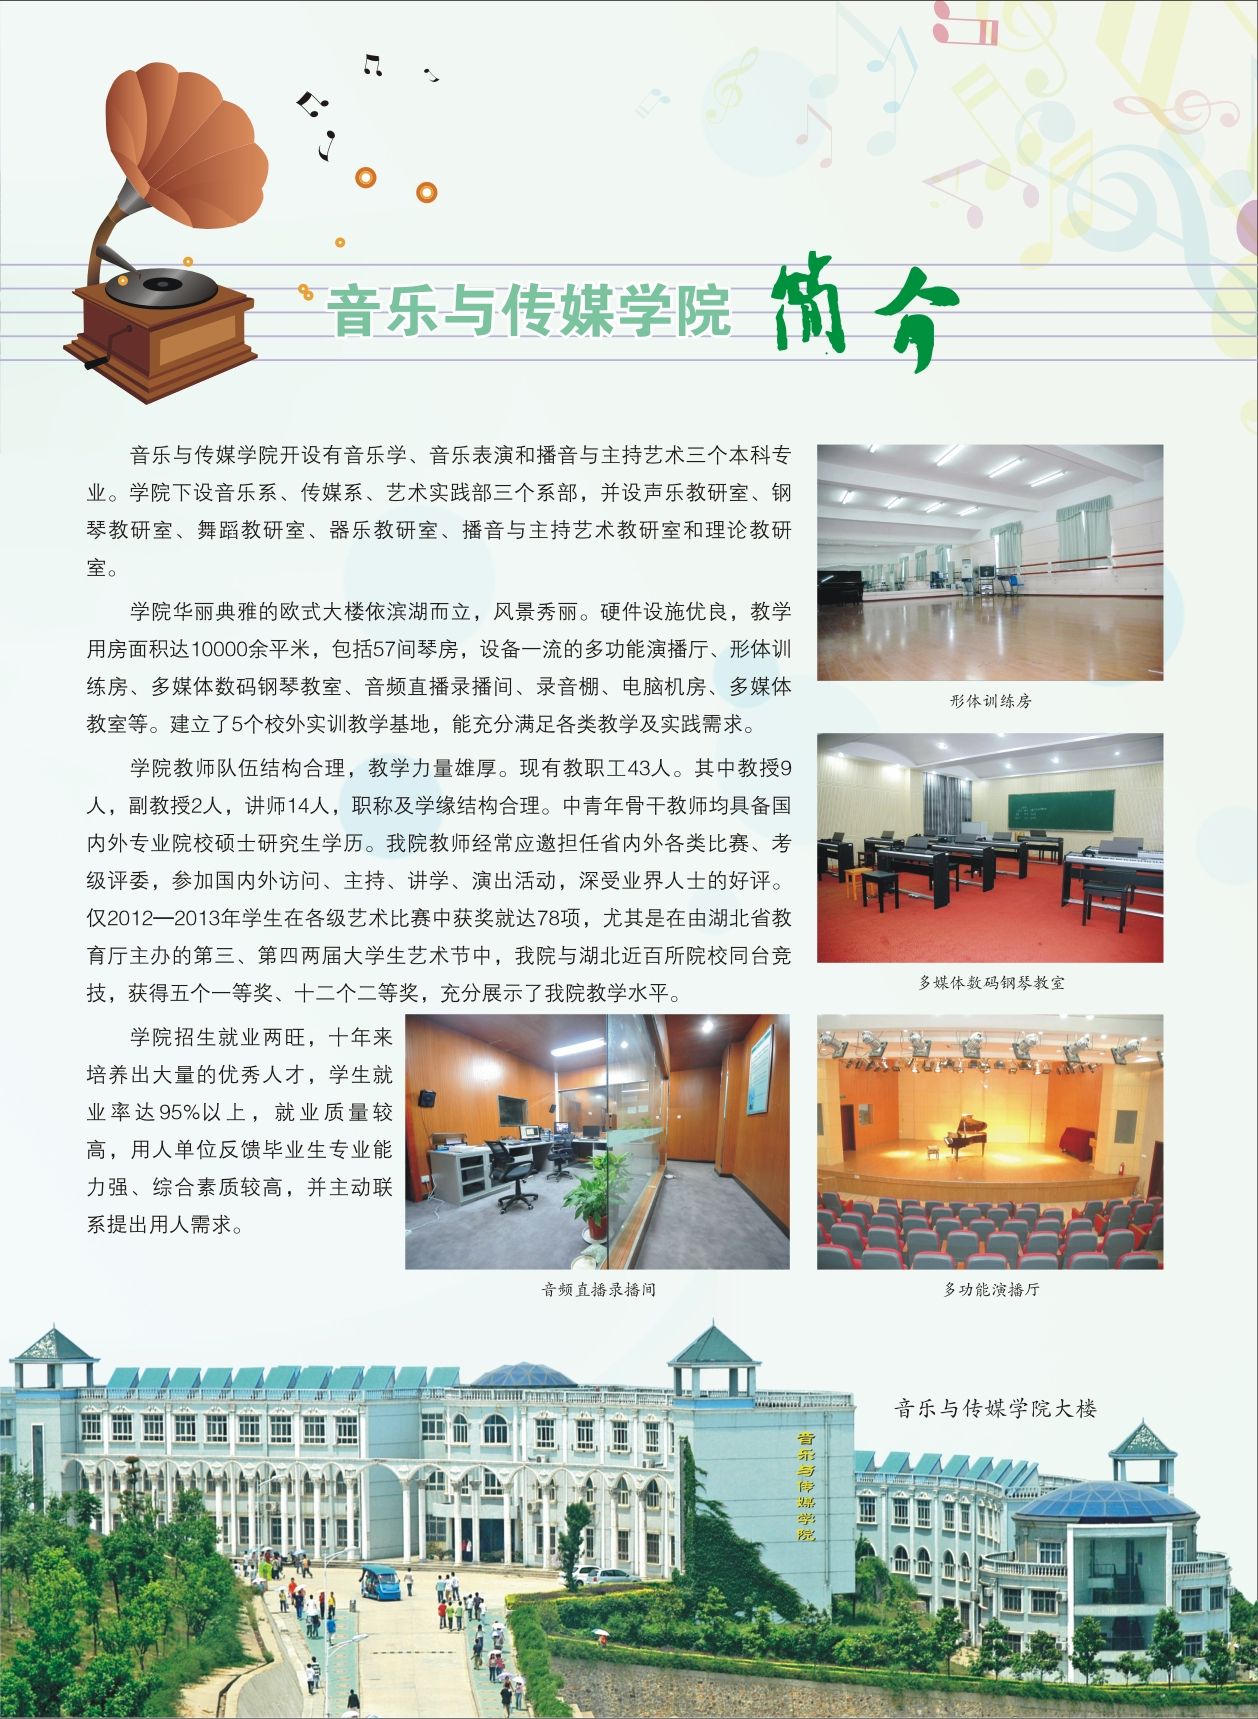 武昌理工学院2014音乐与传媒学院招生简章